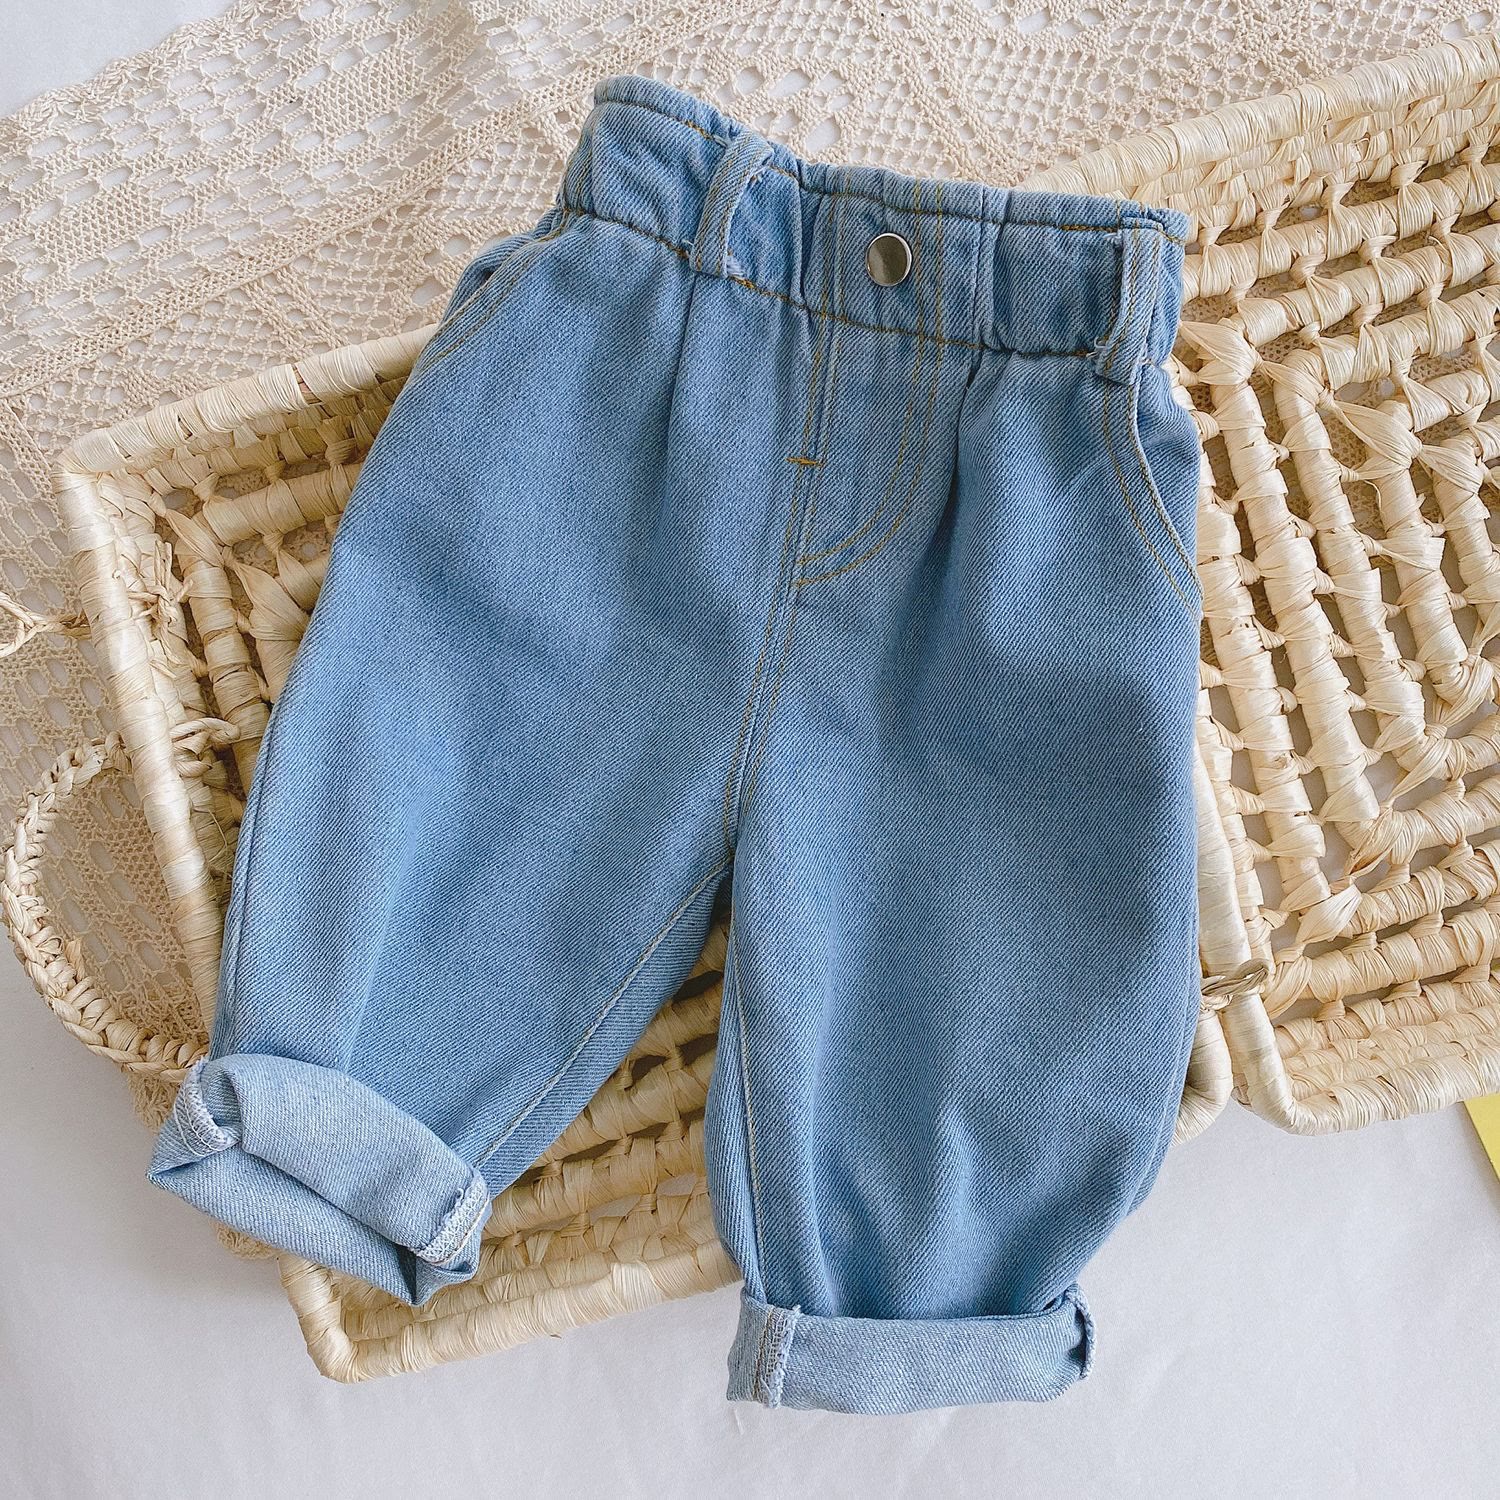 Baby Jeans Tutorial - Dusty & Marlina